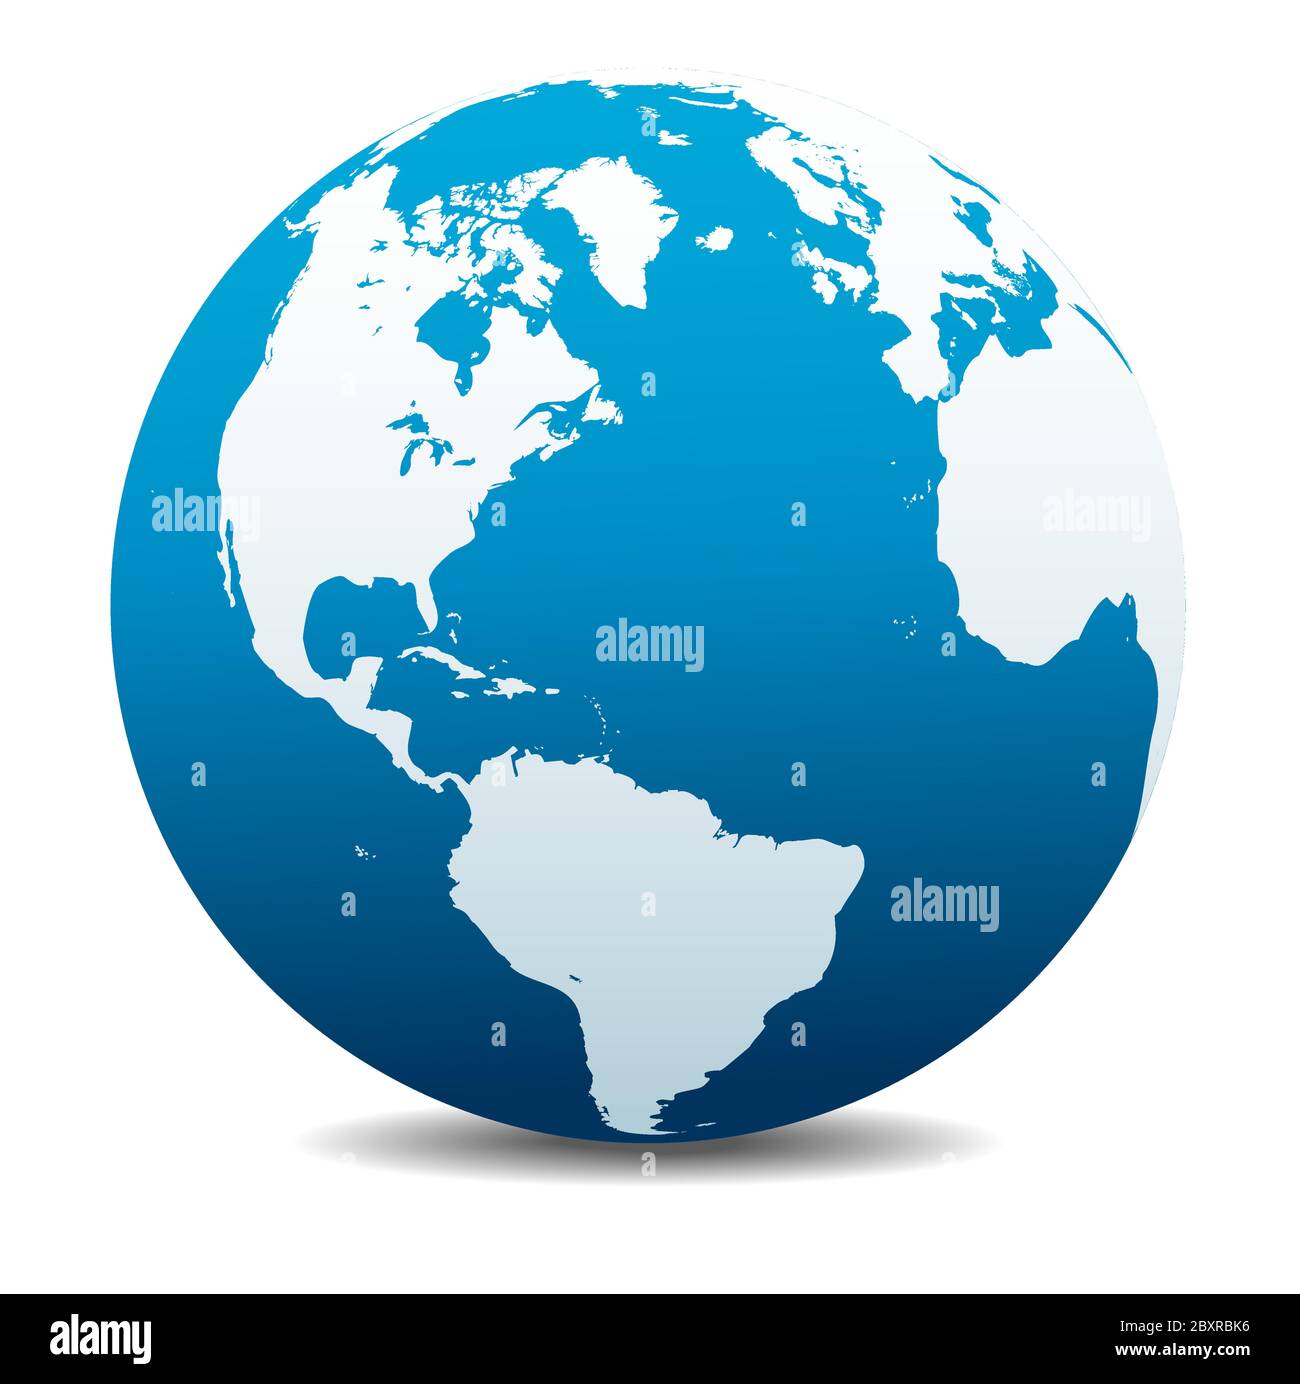 Nord e Sud America, Europa, Africa. Icona Mappa vettoriale del globo mondiale, Terra. Tutti gli elementi si trovano su singoli livelli nel file vettoriale. Illustrazione Vettoriale